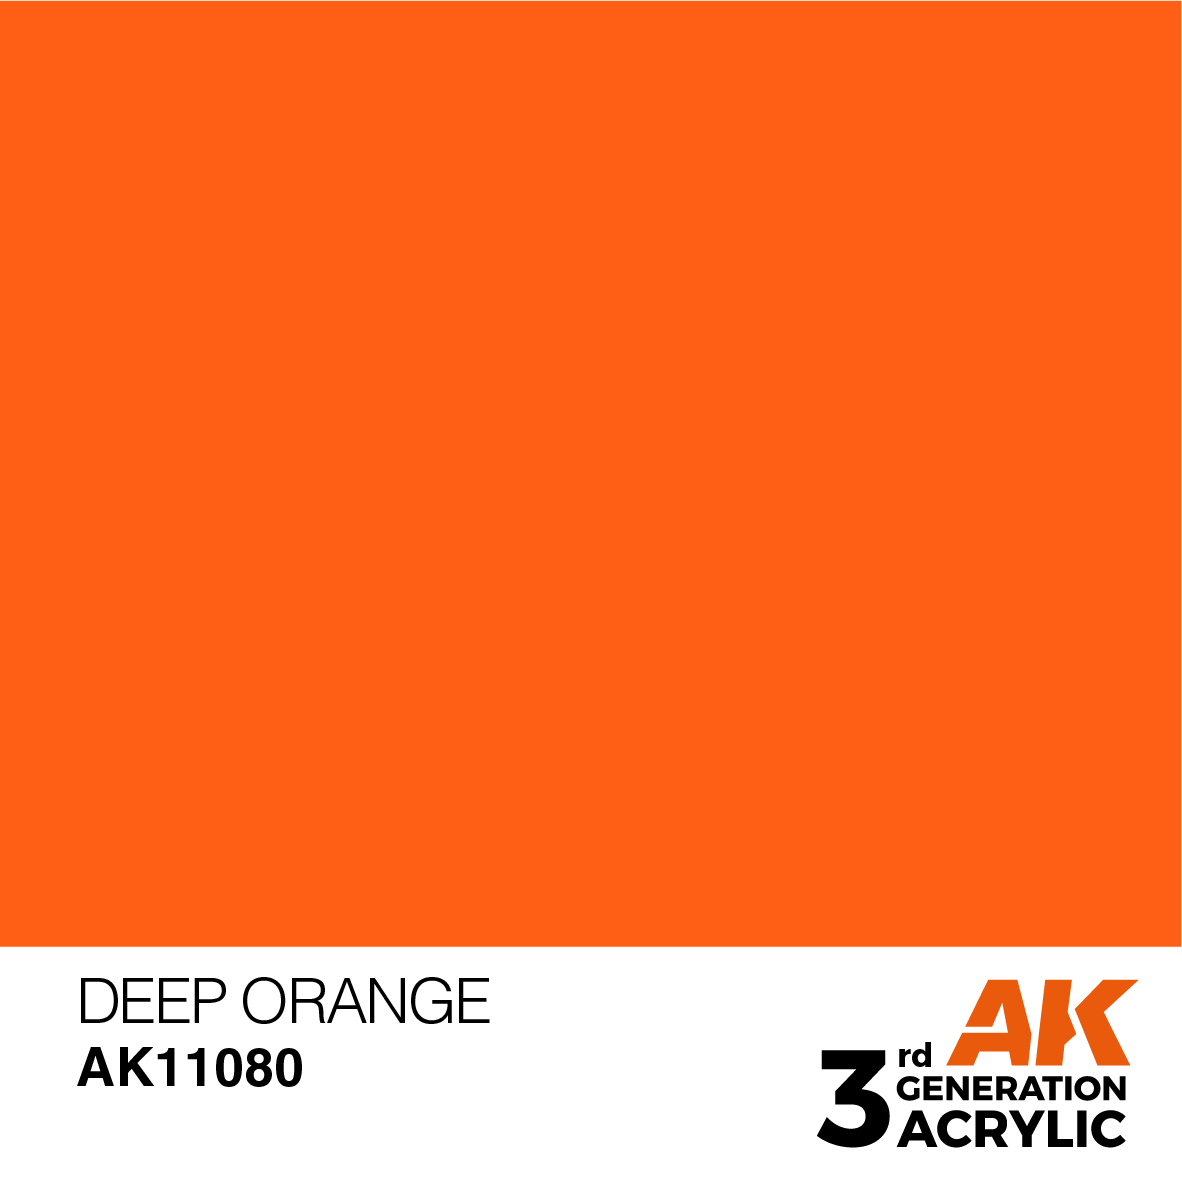 How to Mix Shades of Orange Acrylic Paint - Trembeling Art